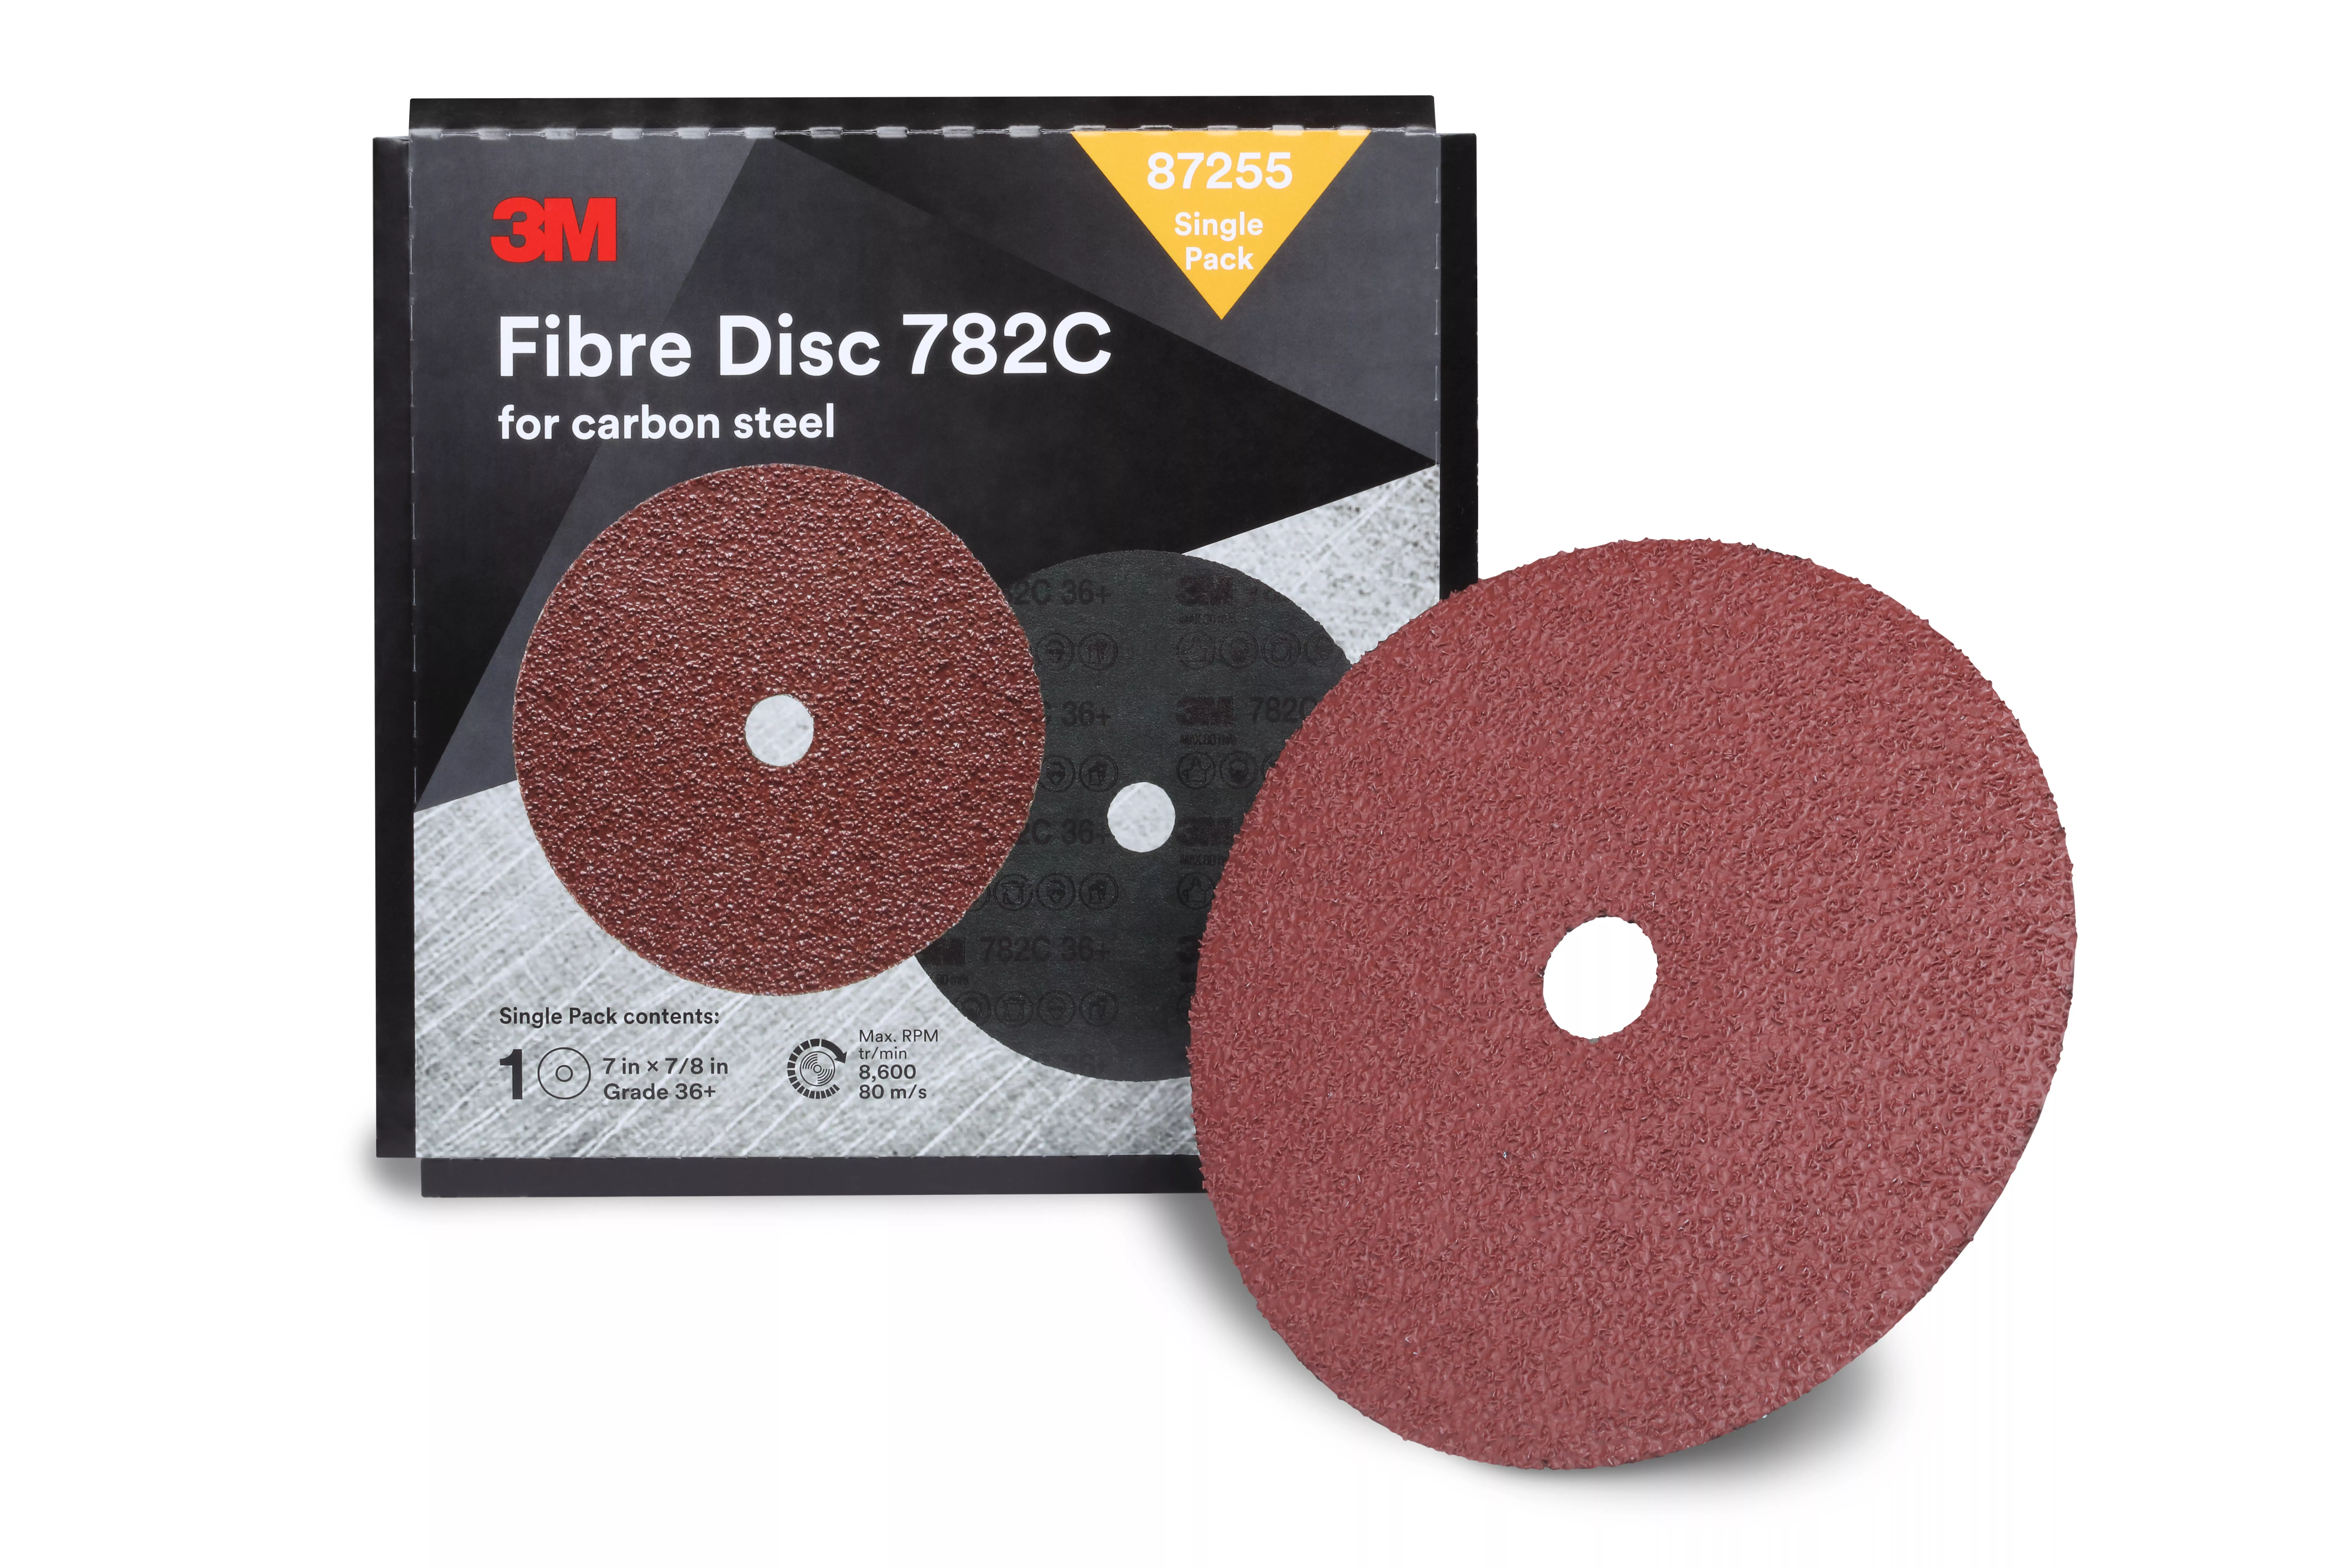 3M™ Fibre Disc 782C, 7 in x 7/8 in, 36+, Trial Pack, 10 ea/Case